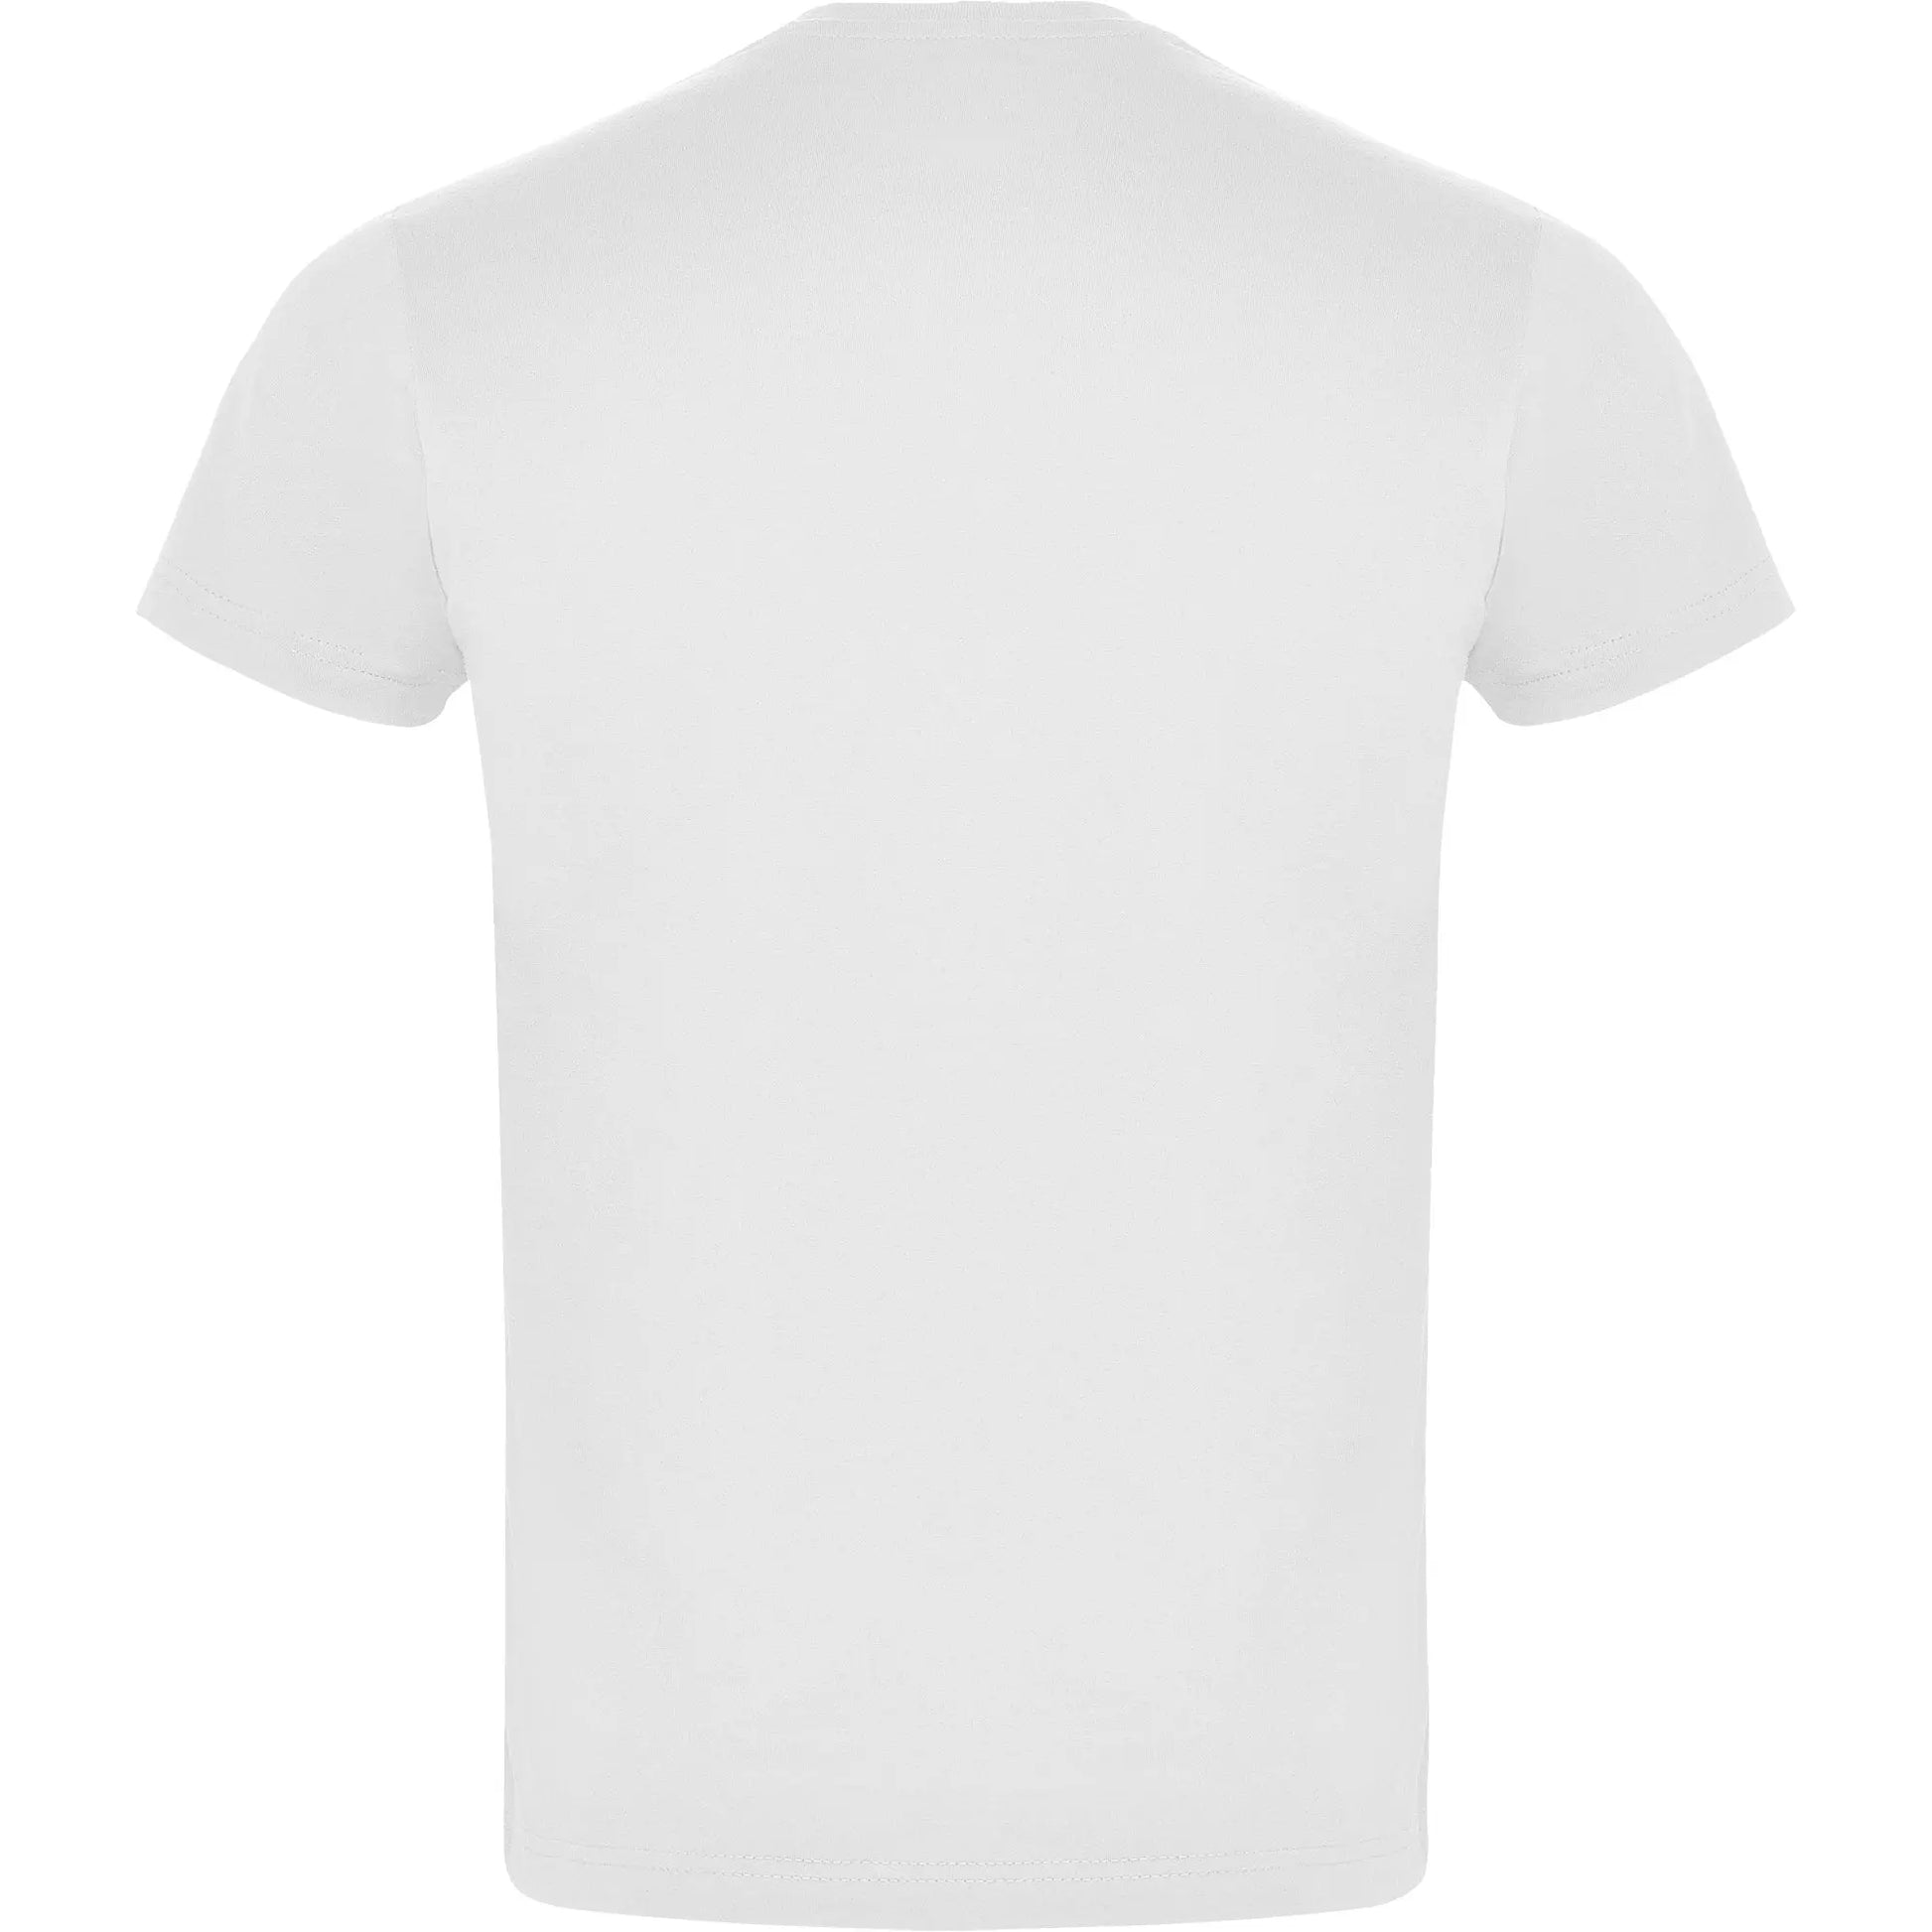 Camiseta UNISEX Blanca i23studio